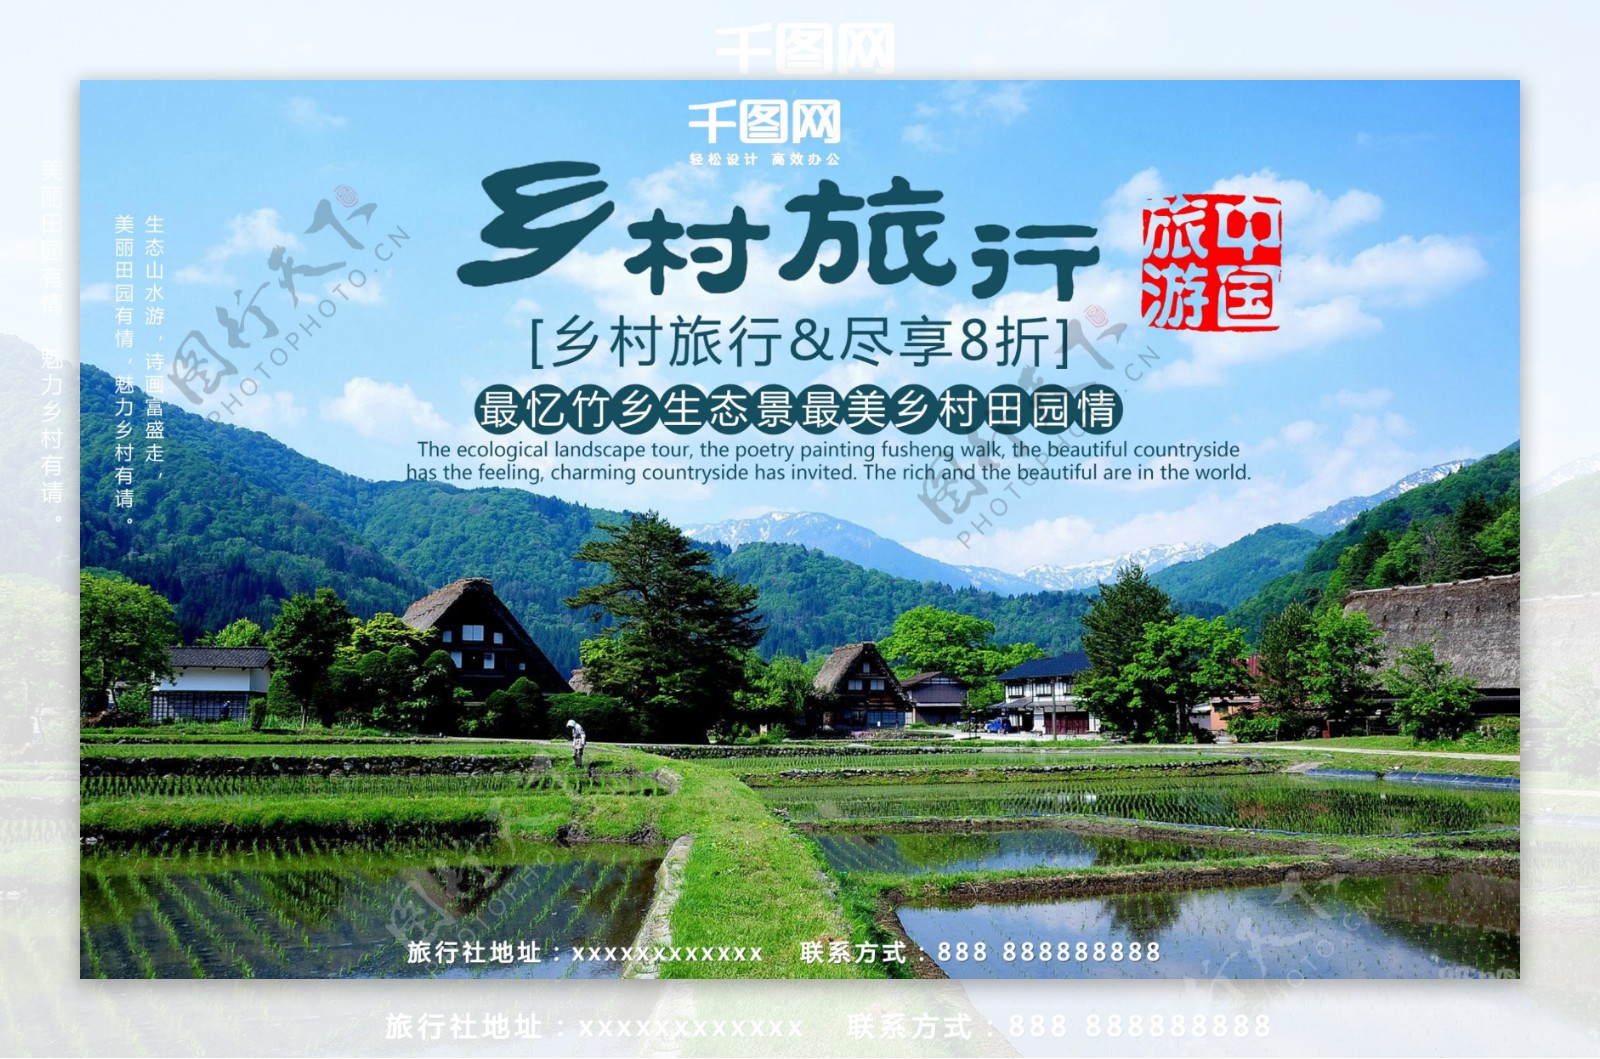 旅游中国乡村旅行田园风光促销活动海报